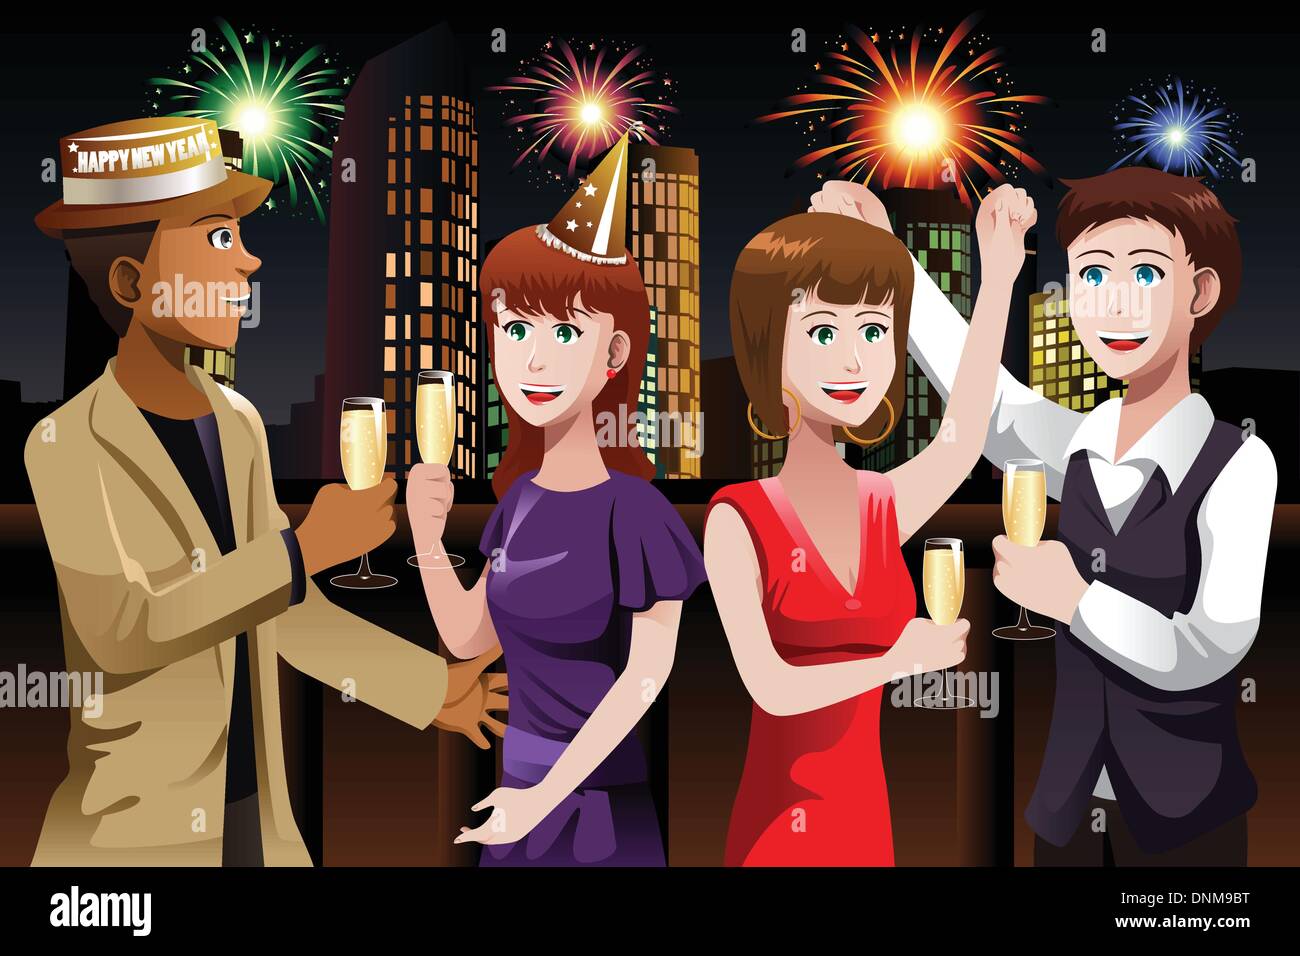 Eine Gruppe junger Leute feiert Neujahr Vektor-illustration Stock Vektor